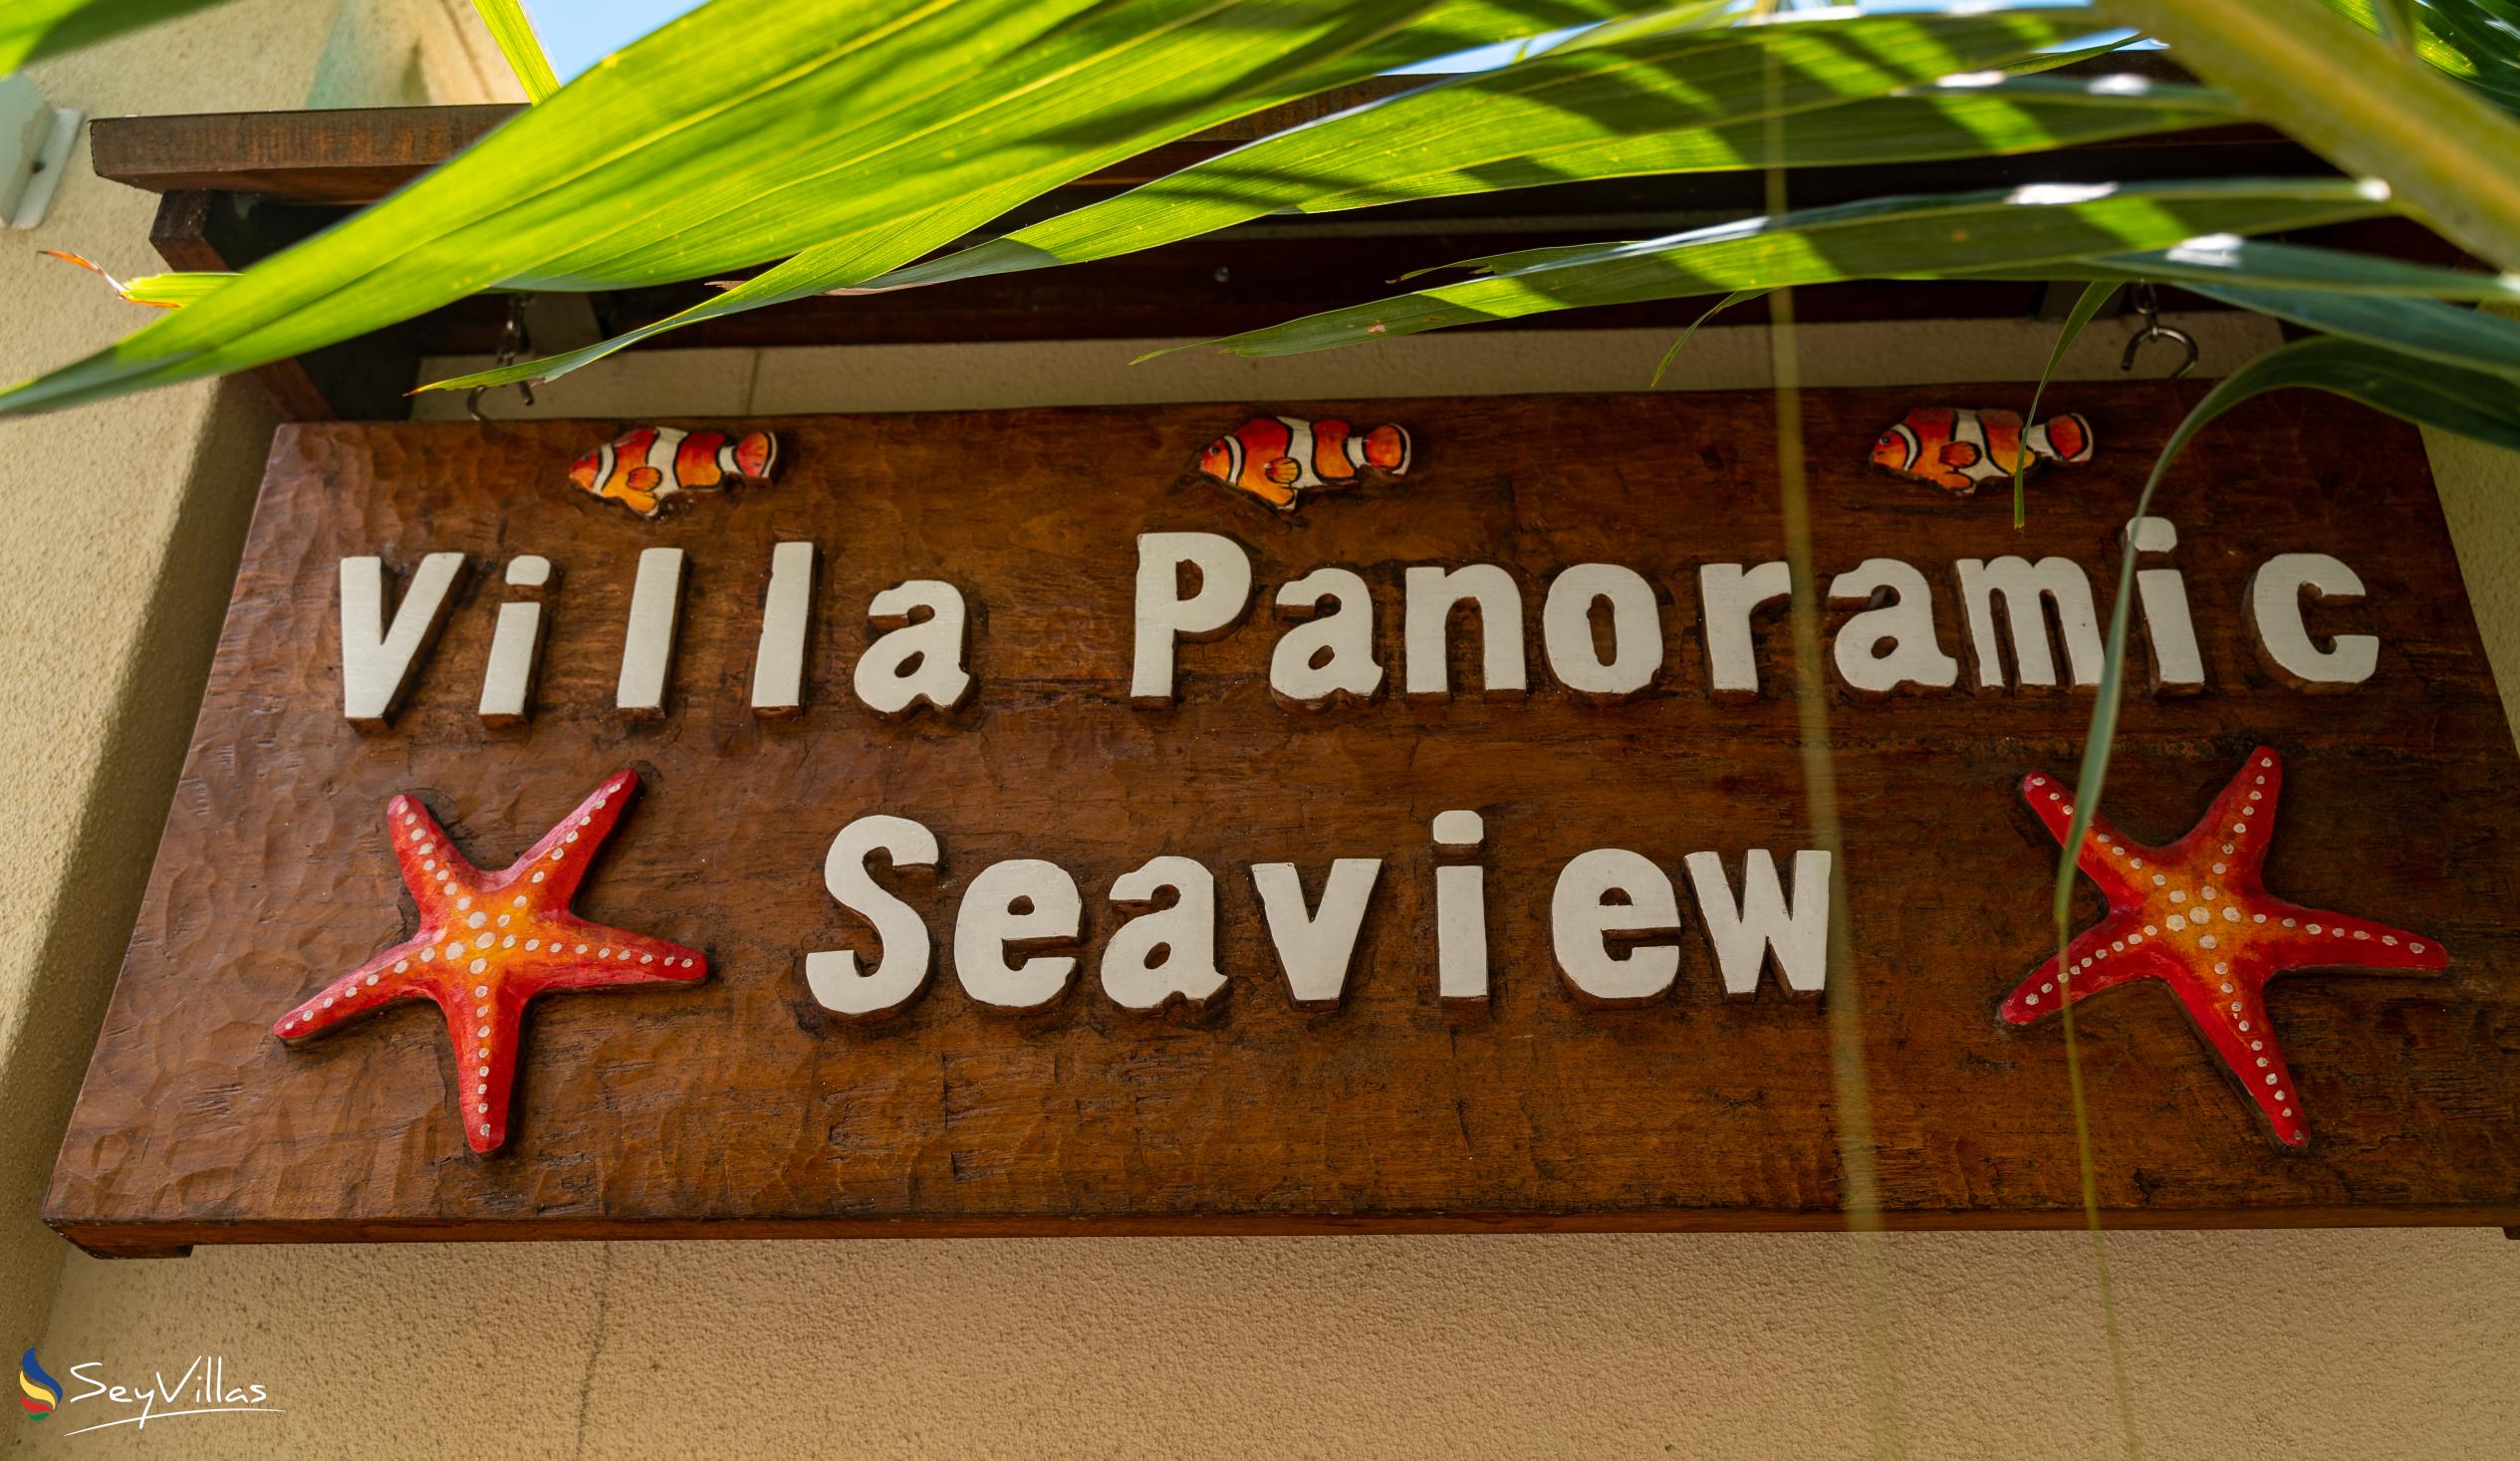 Foto 53: Villa Panoramic Seaview - Intérieur - Mahé (Seychelles)